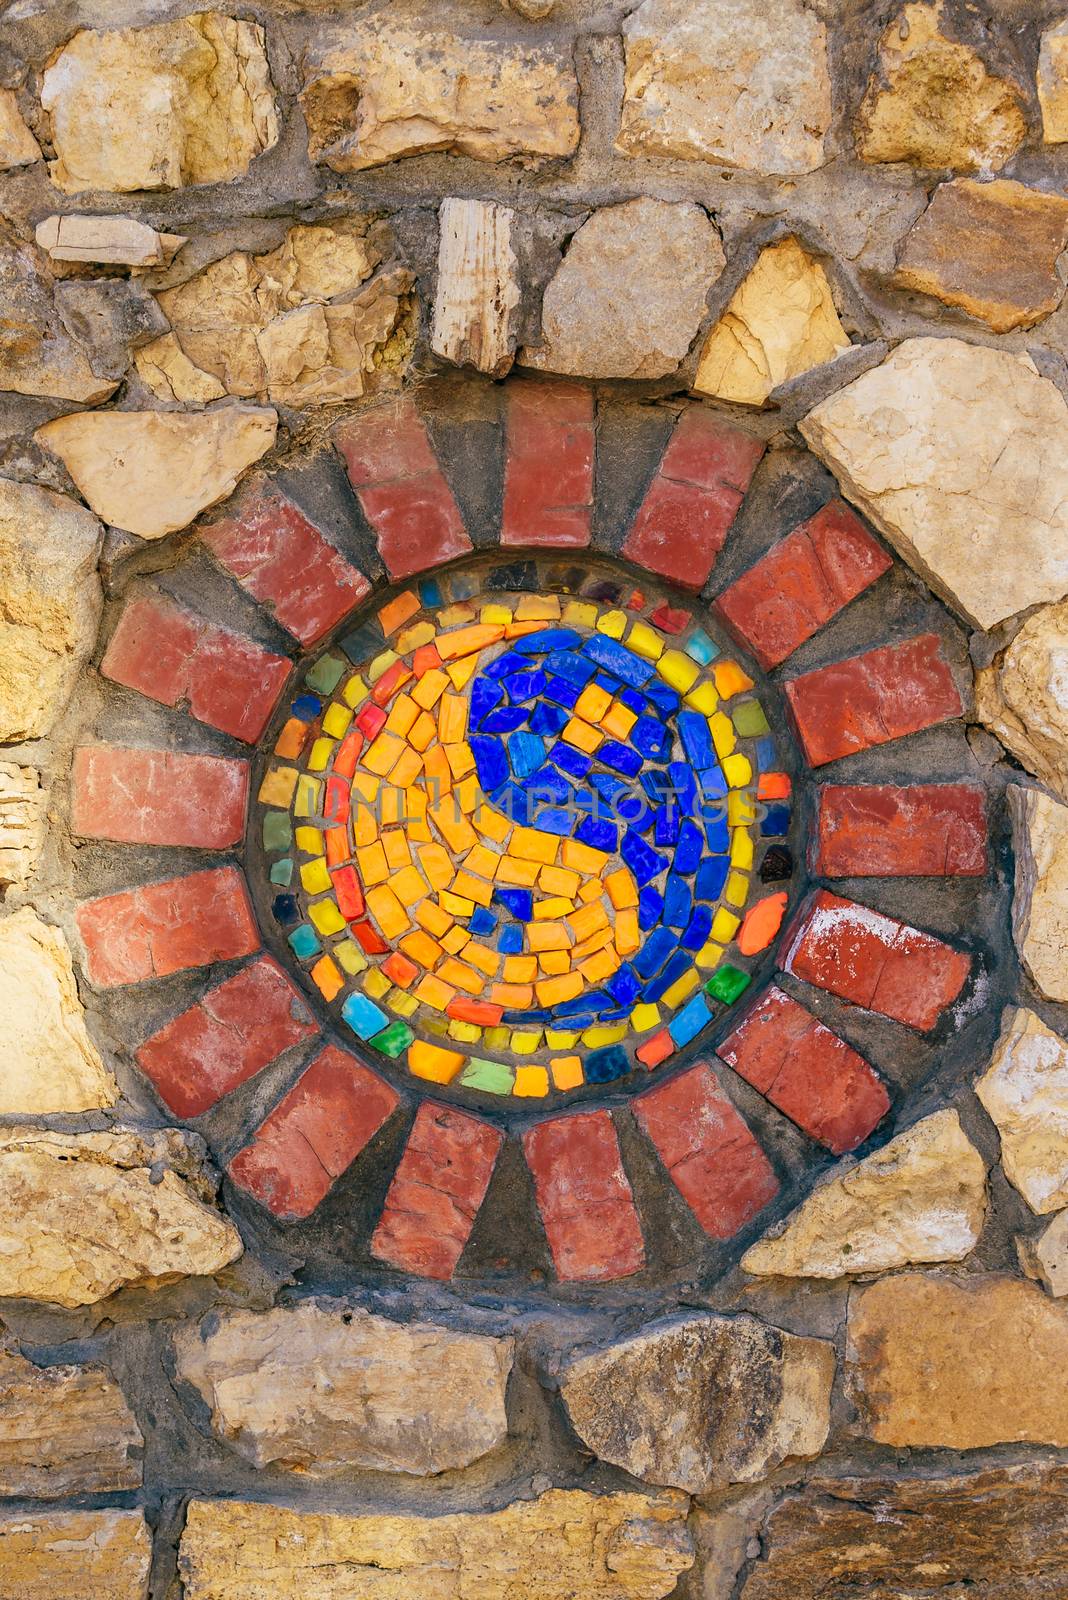 Mosaic symbol of Yin and yang on stone wall. by Seva_blsv